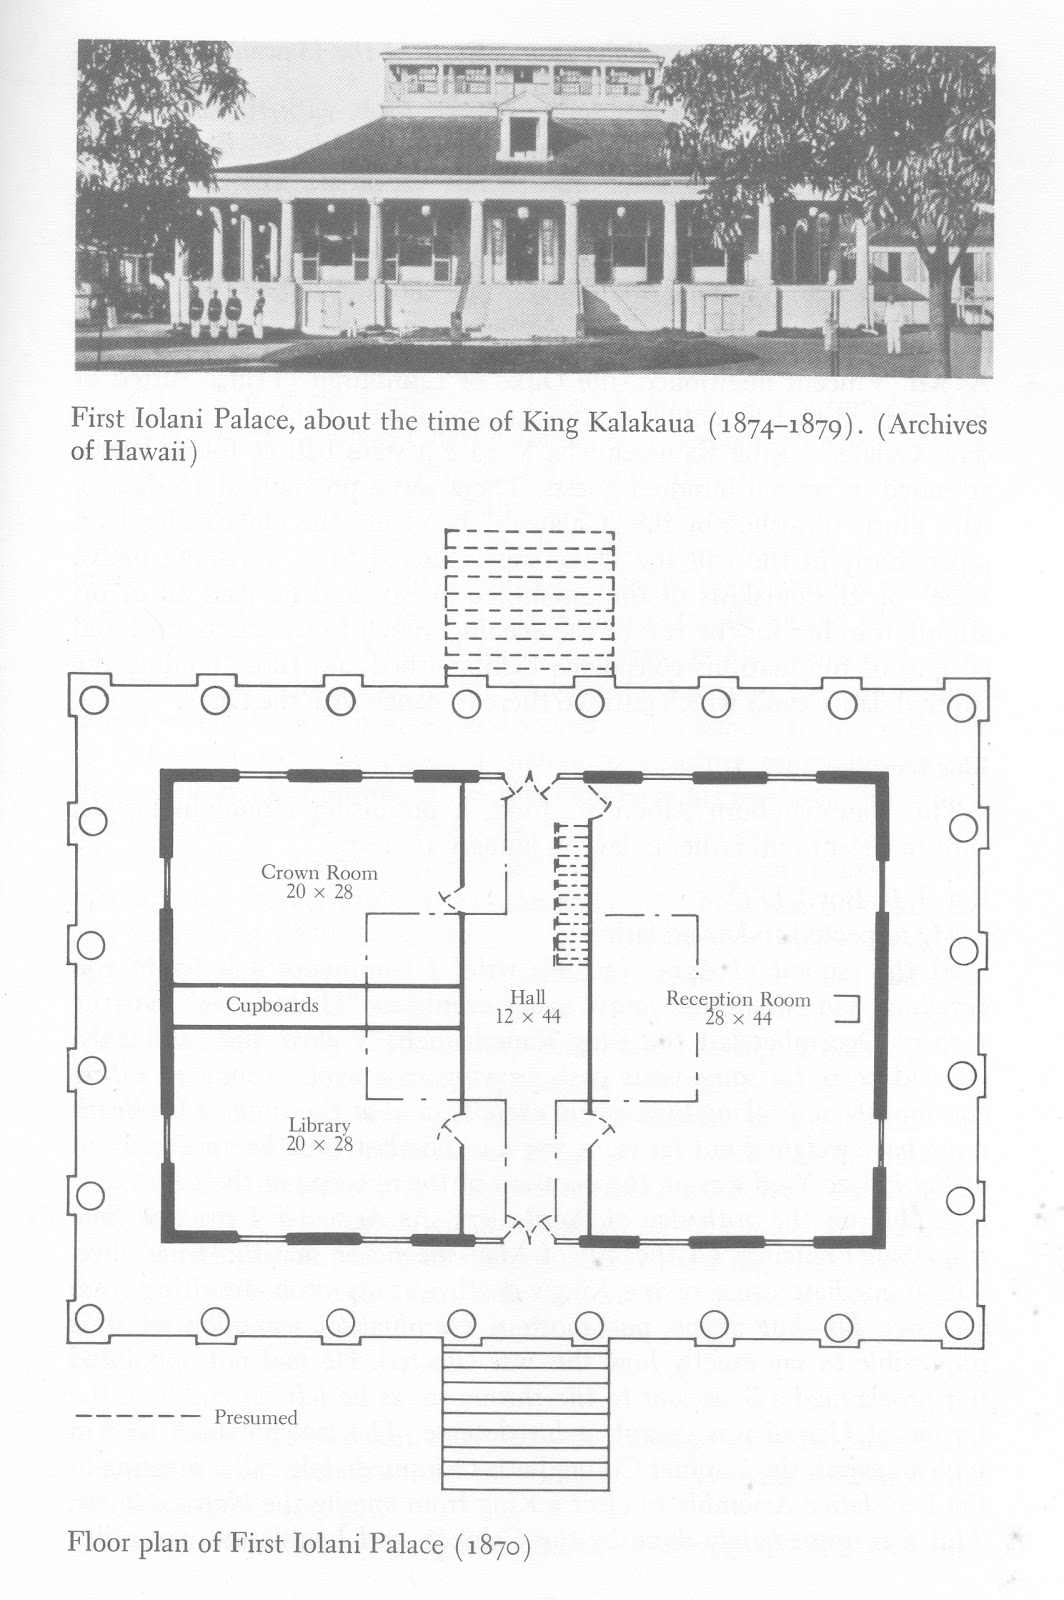 Ho‘okuleana Hale Ali‘i (The First ‘Iolani Palace)